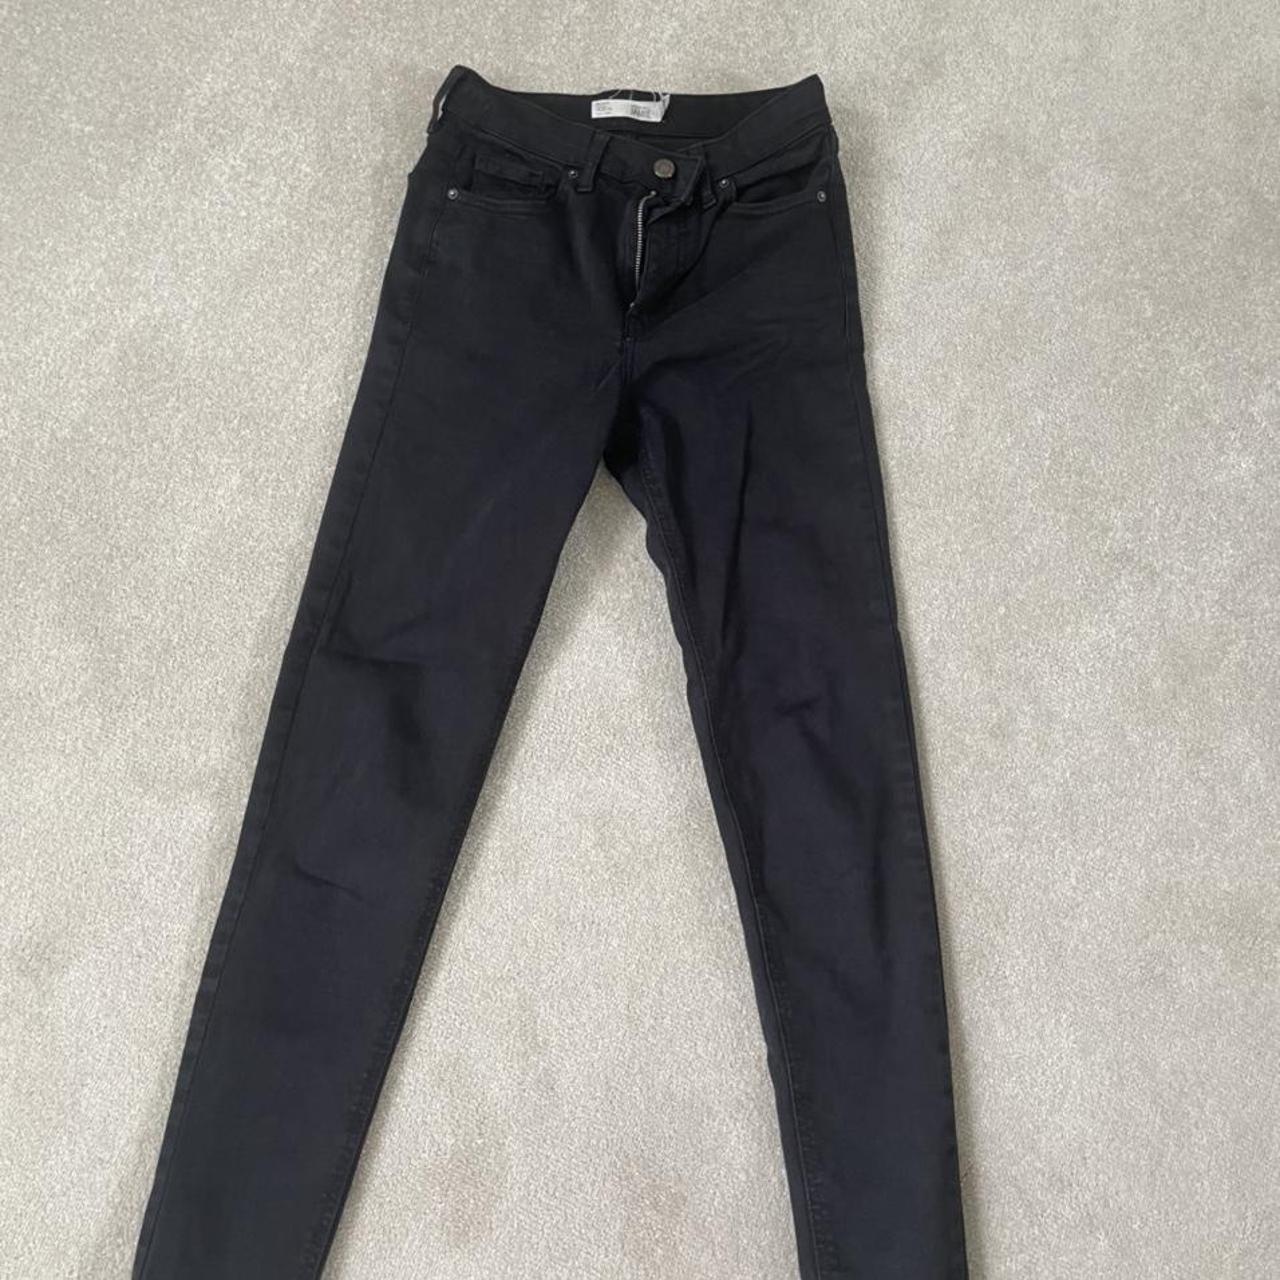 Jamie black skinny Topshop jeans. W26 L34 - Depop